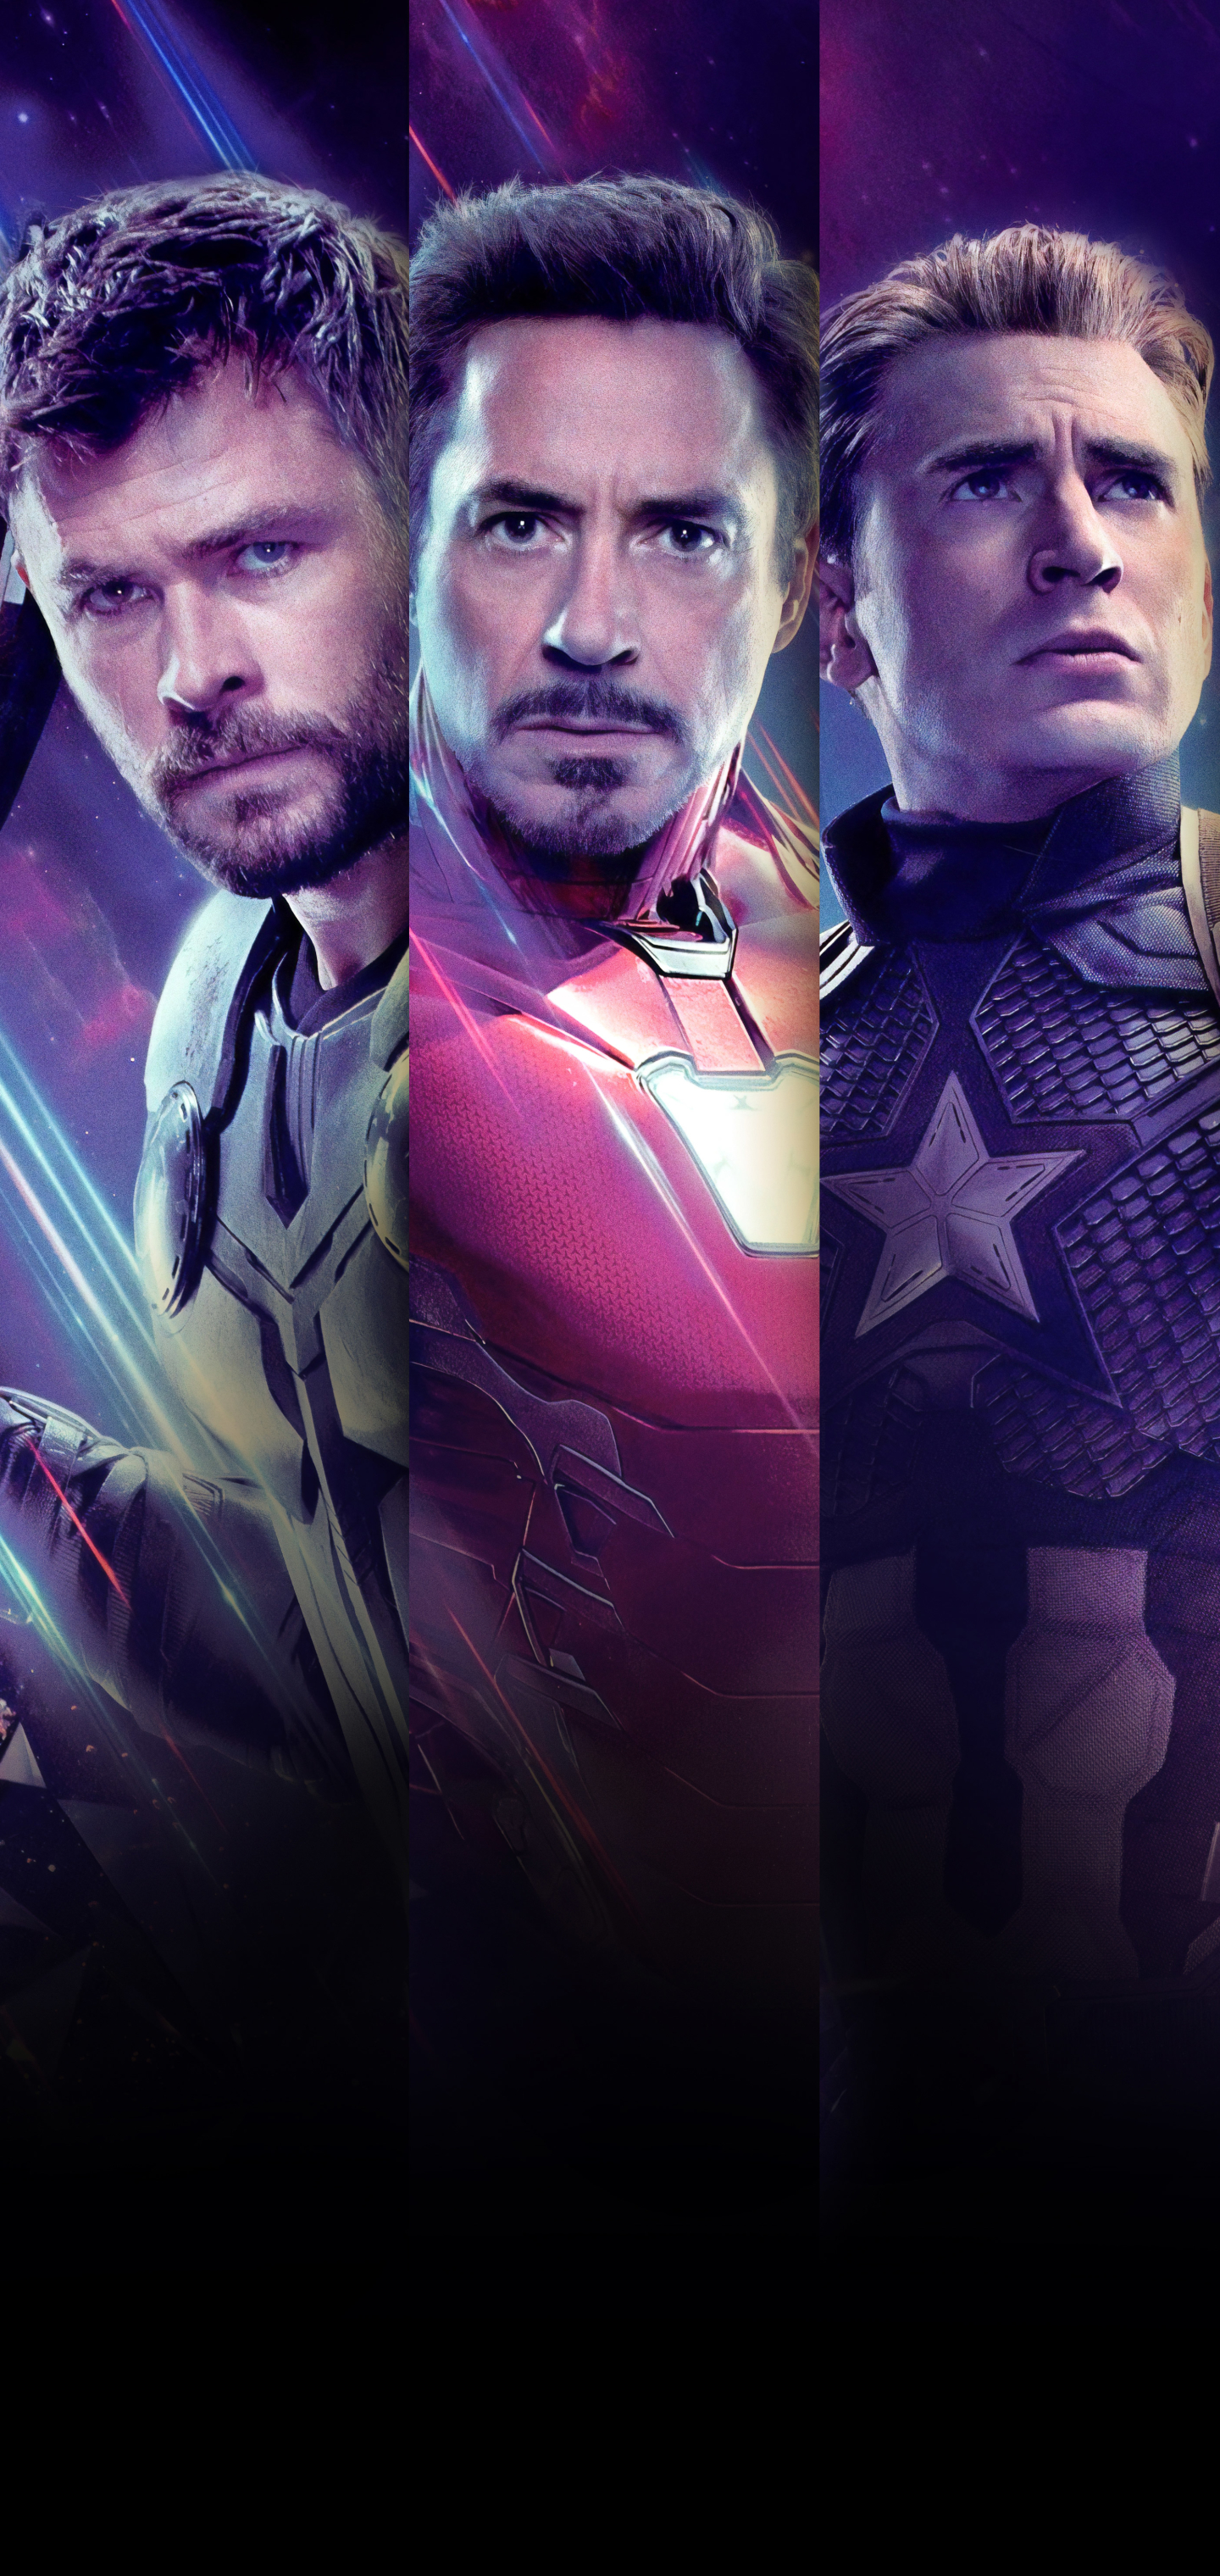 Free download wallpaper Iron Man, Captain America, Avengers, Robert Downey Jr, Chris Evans, Movie, Tony Stark, Thor, The Avengers, Chris Hemsworth, Avengers Endgame on your PC desktop